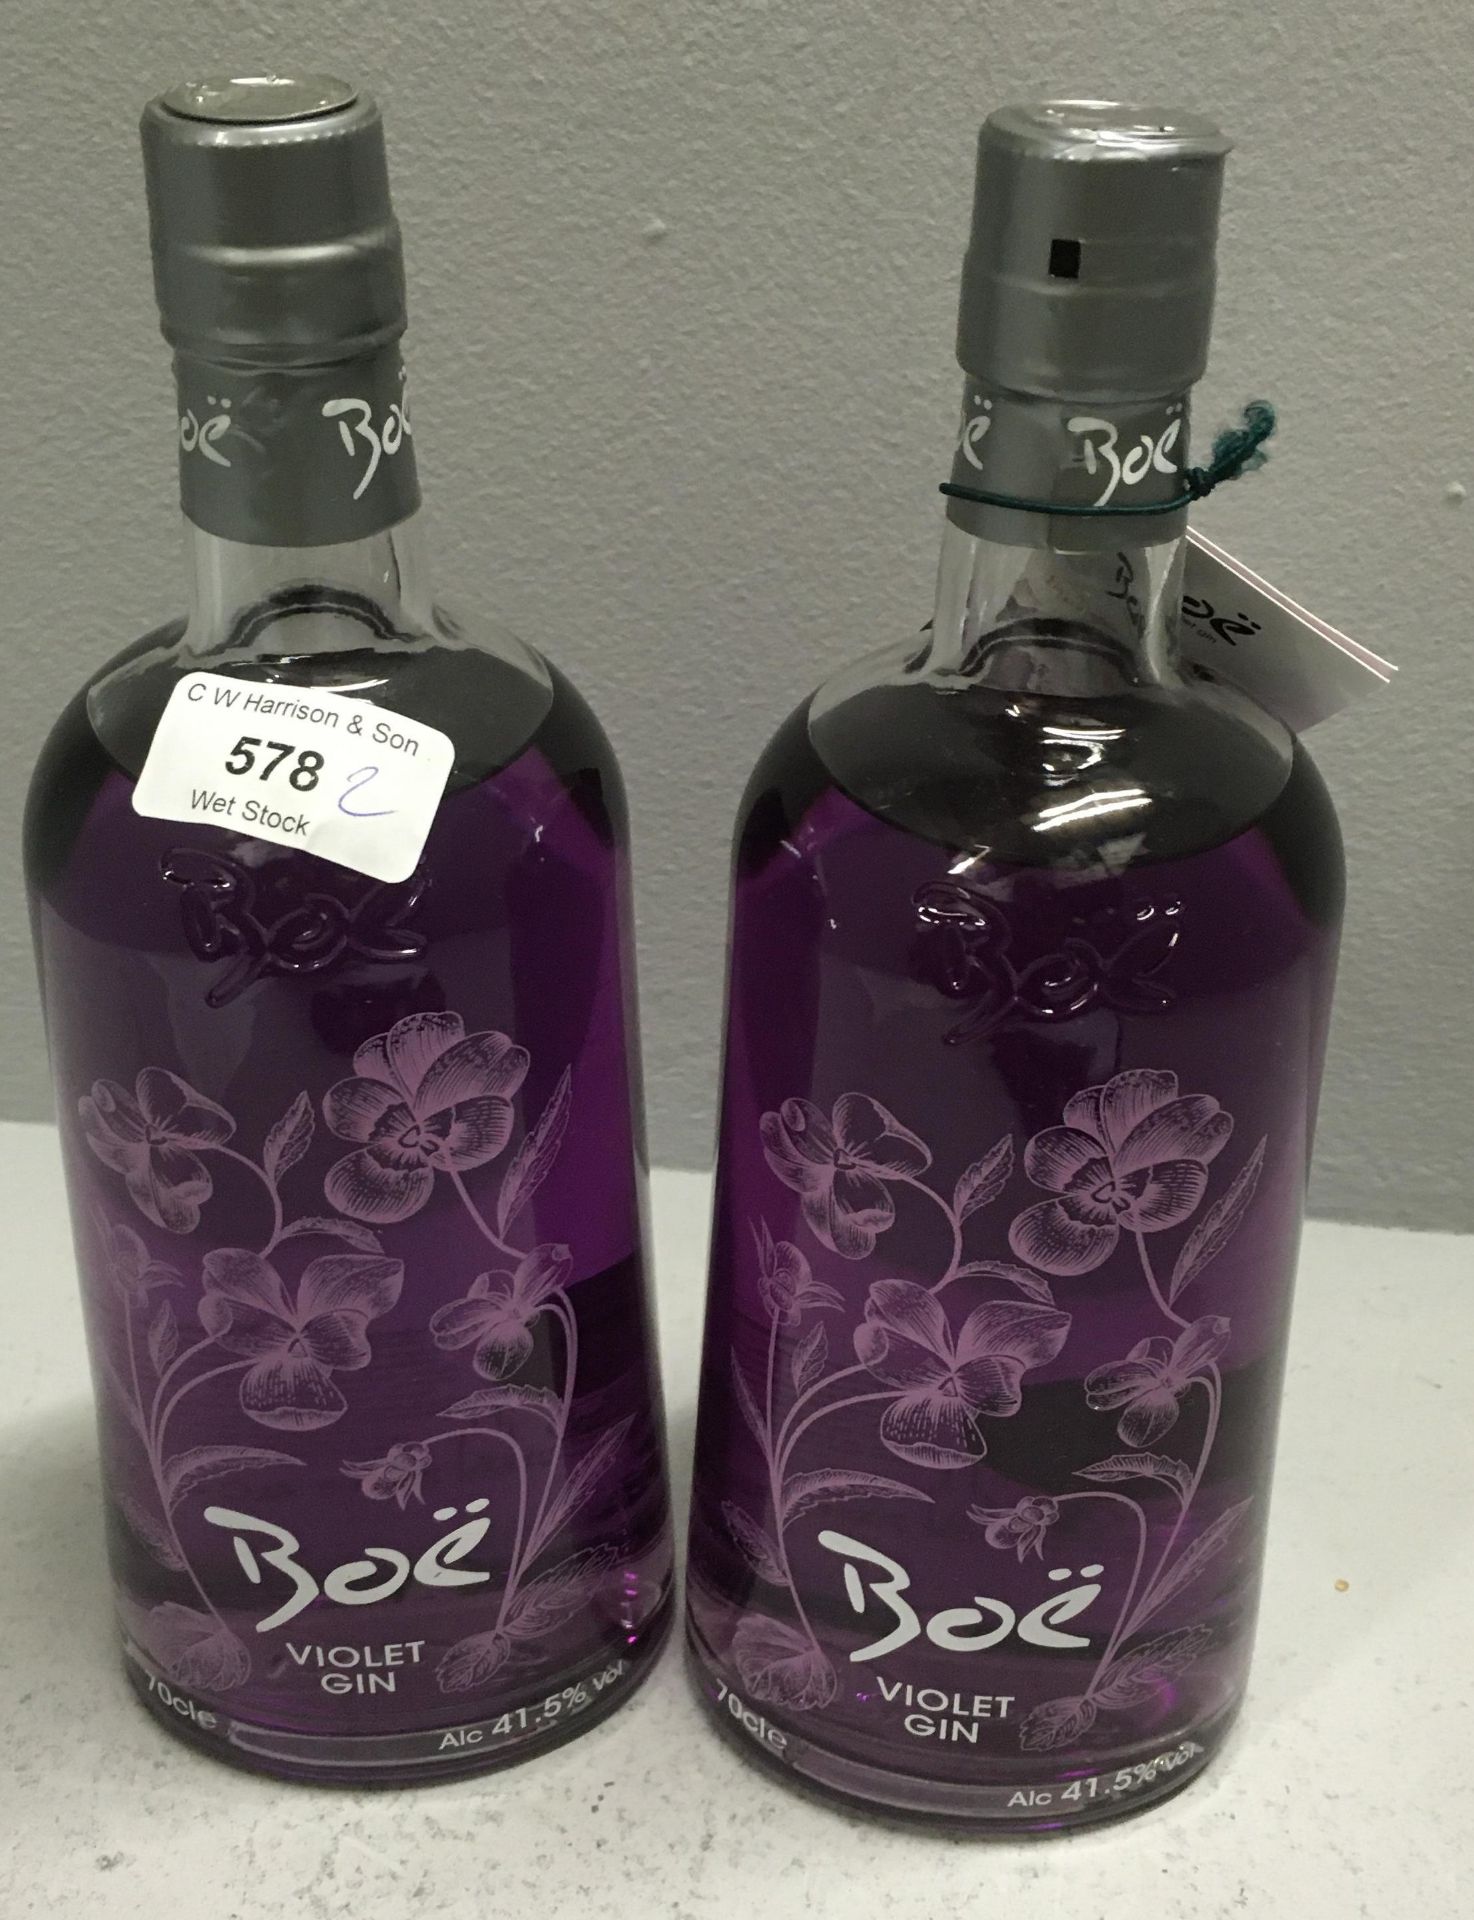 2 x 70cl bottles of Boe Violet Gin